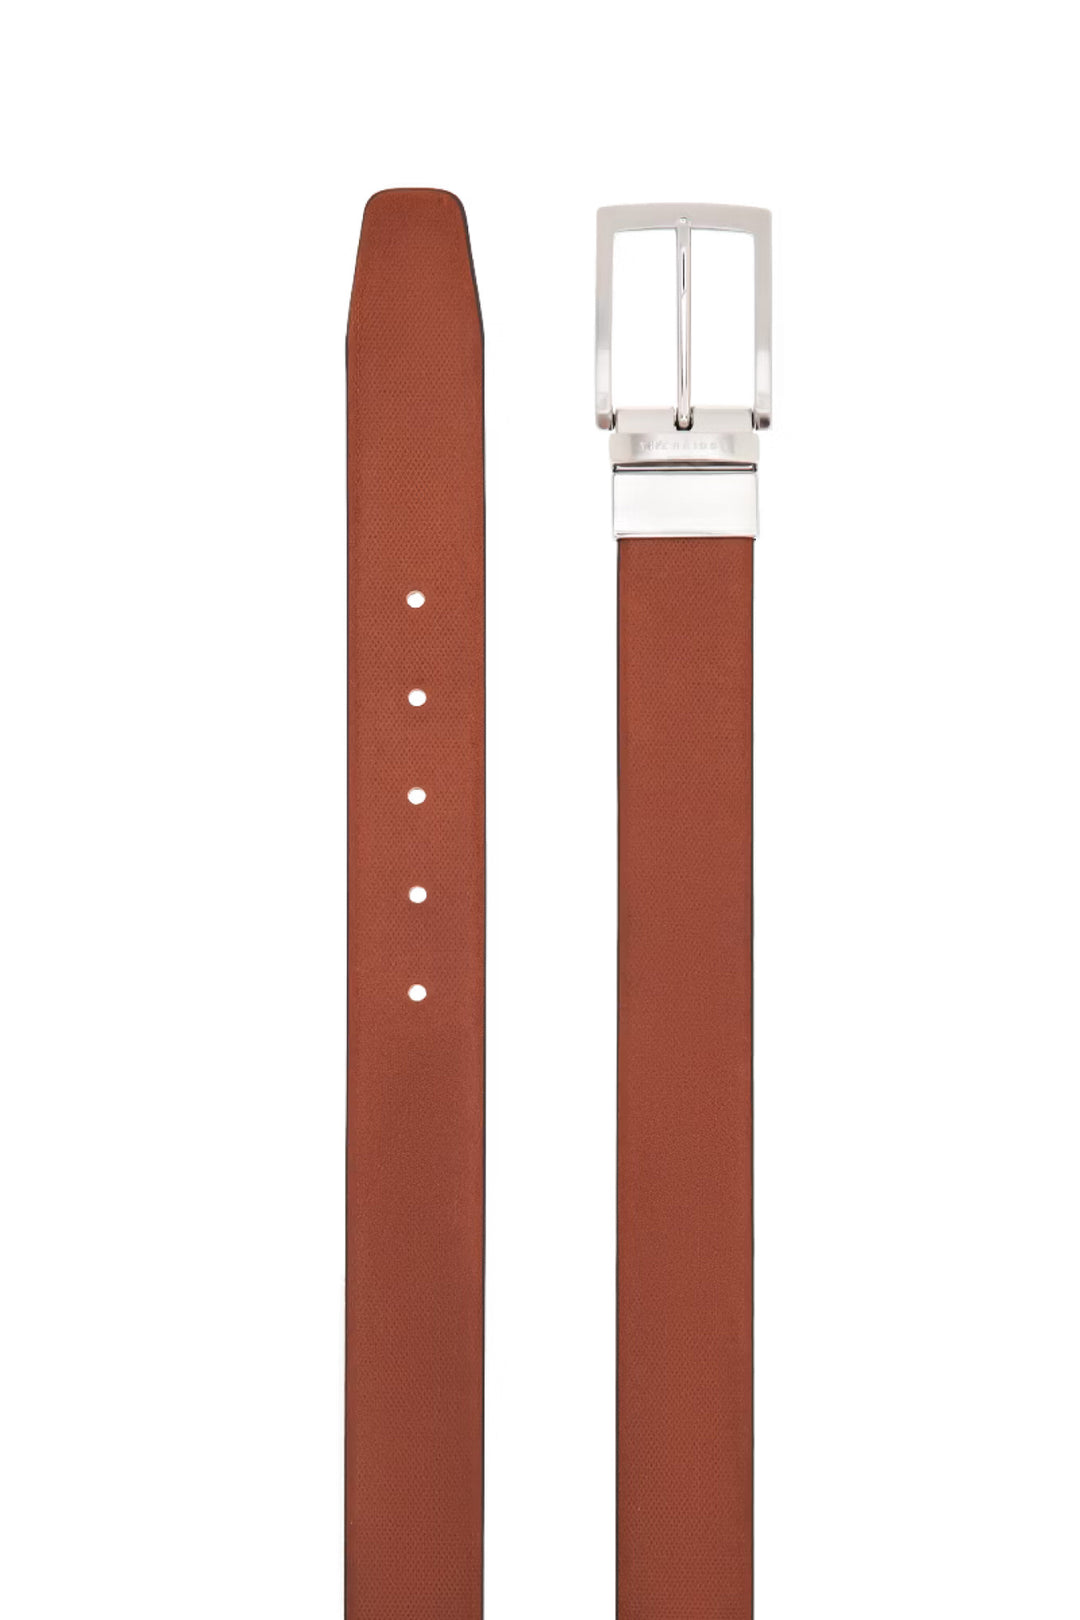 THE BRIDGE Cintura reversibile in pelle marrone e nera con fibbia color argento - Mancinelli 1954